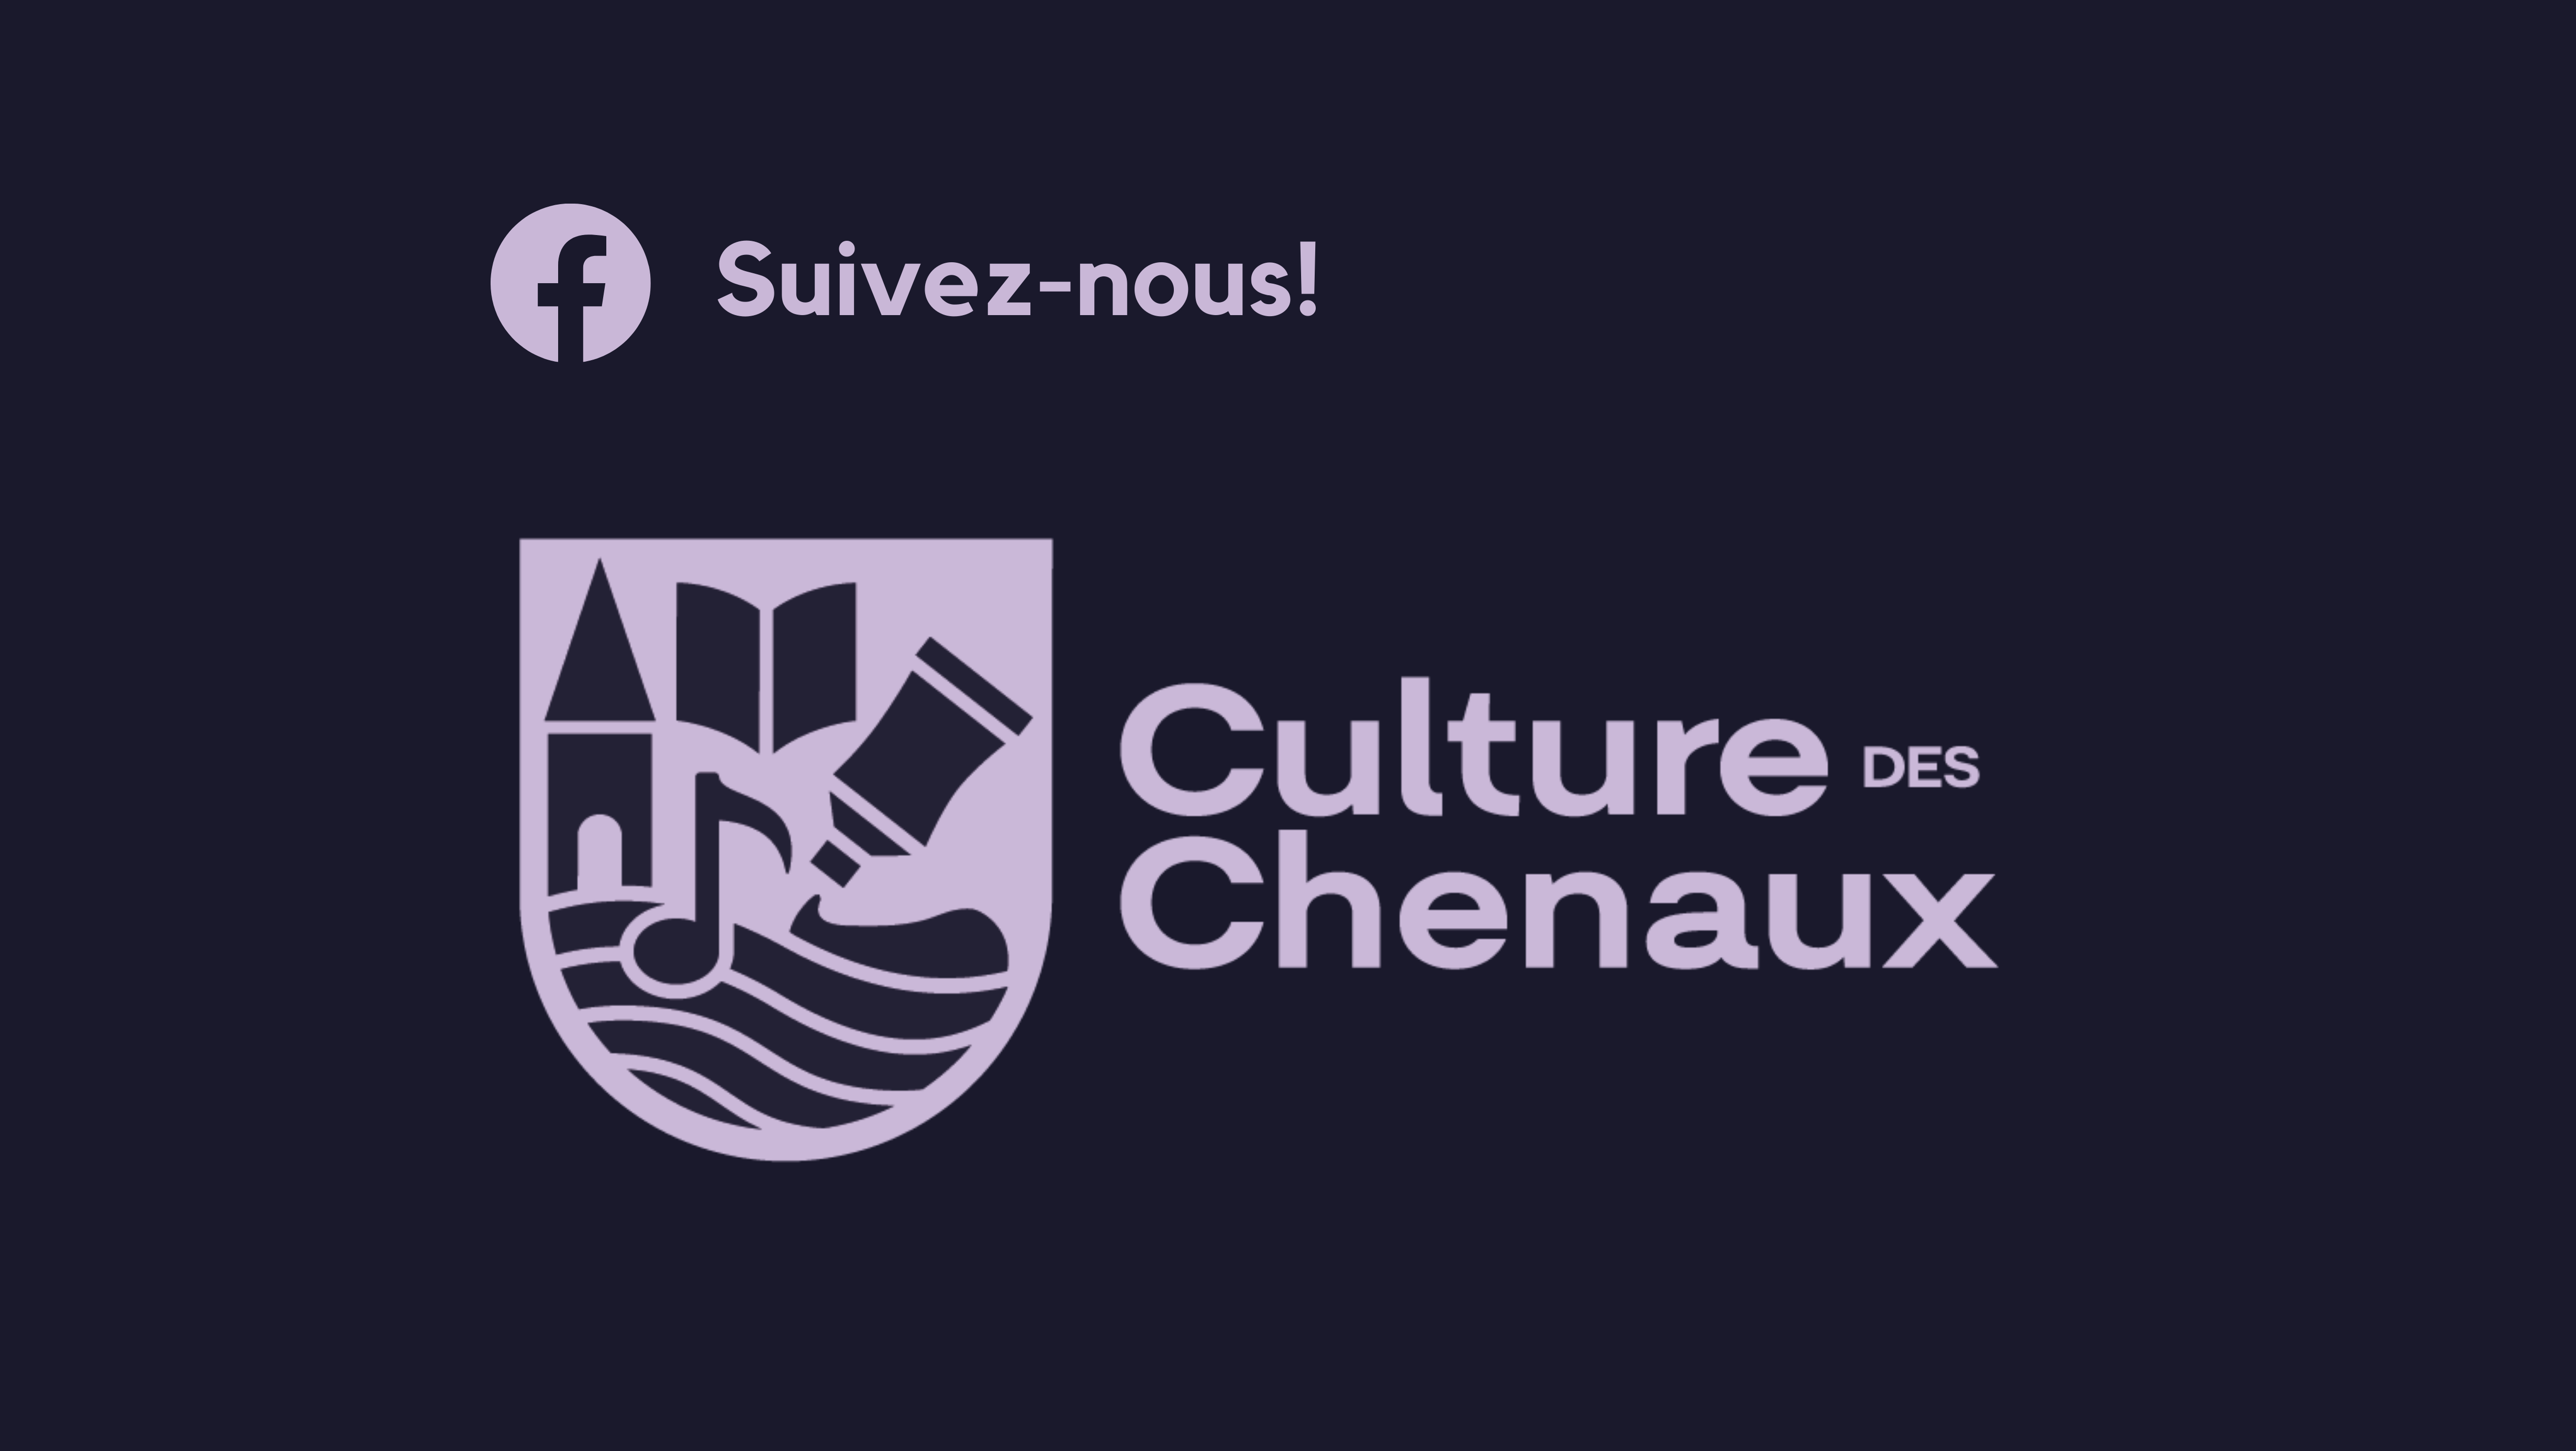 Culture des Chenaux revoit la structure de ses pages Facebook